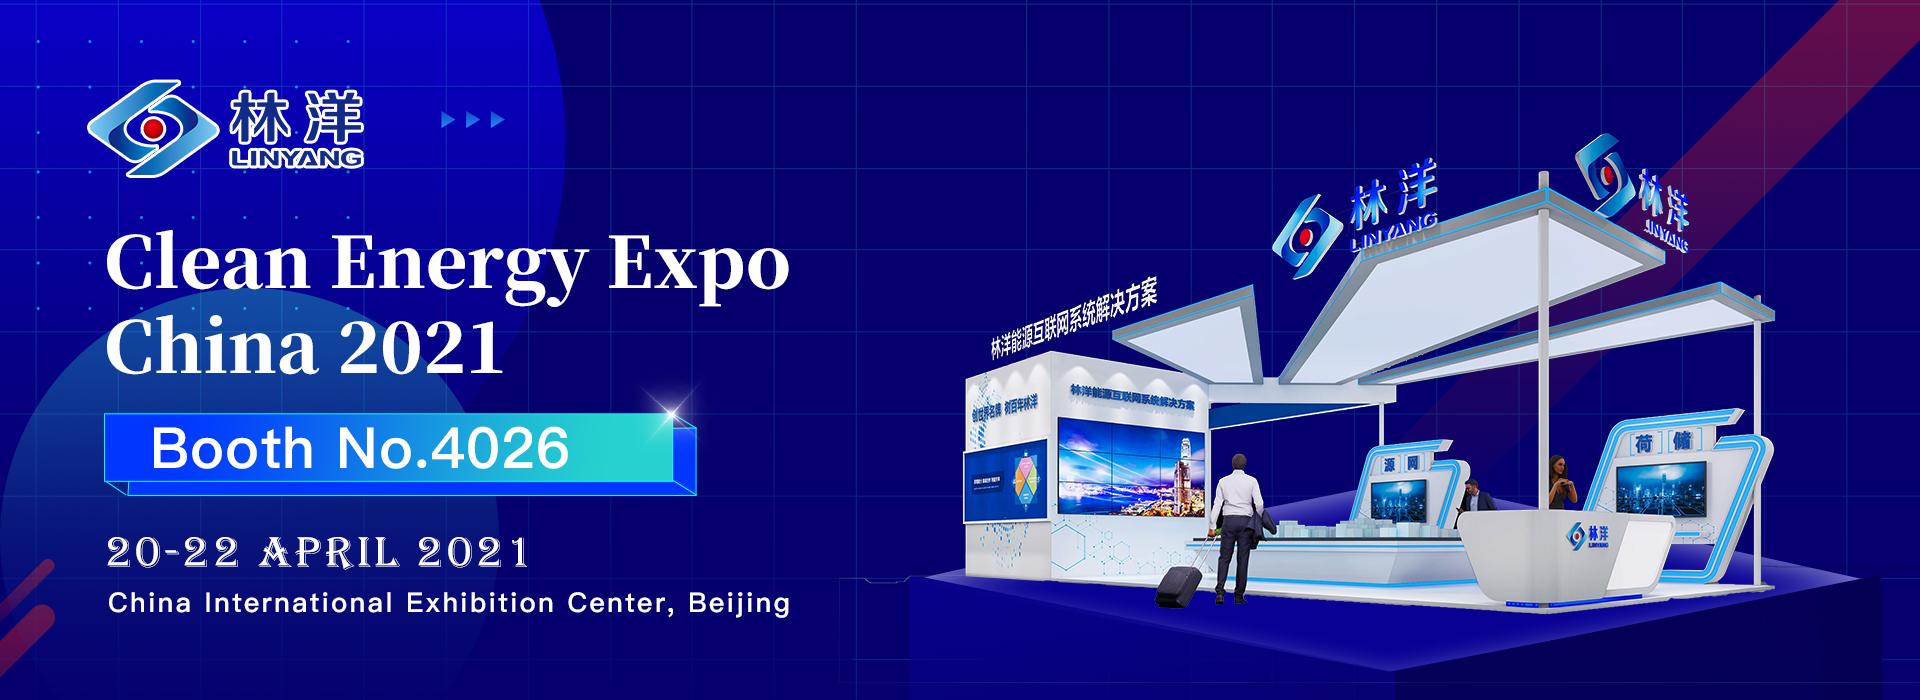 Rea u amohela ho Linyang's booth No. 4026 ho Clean Energy Expo China 2021